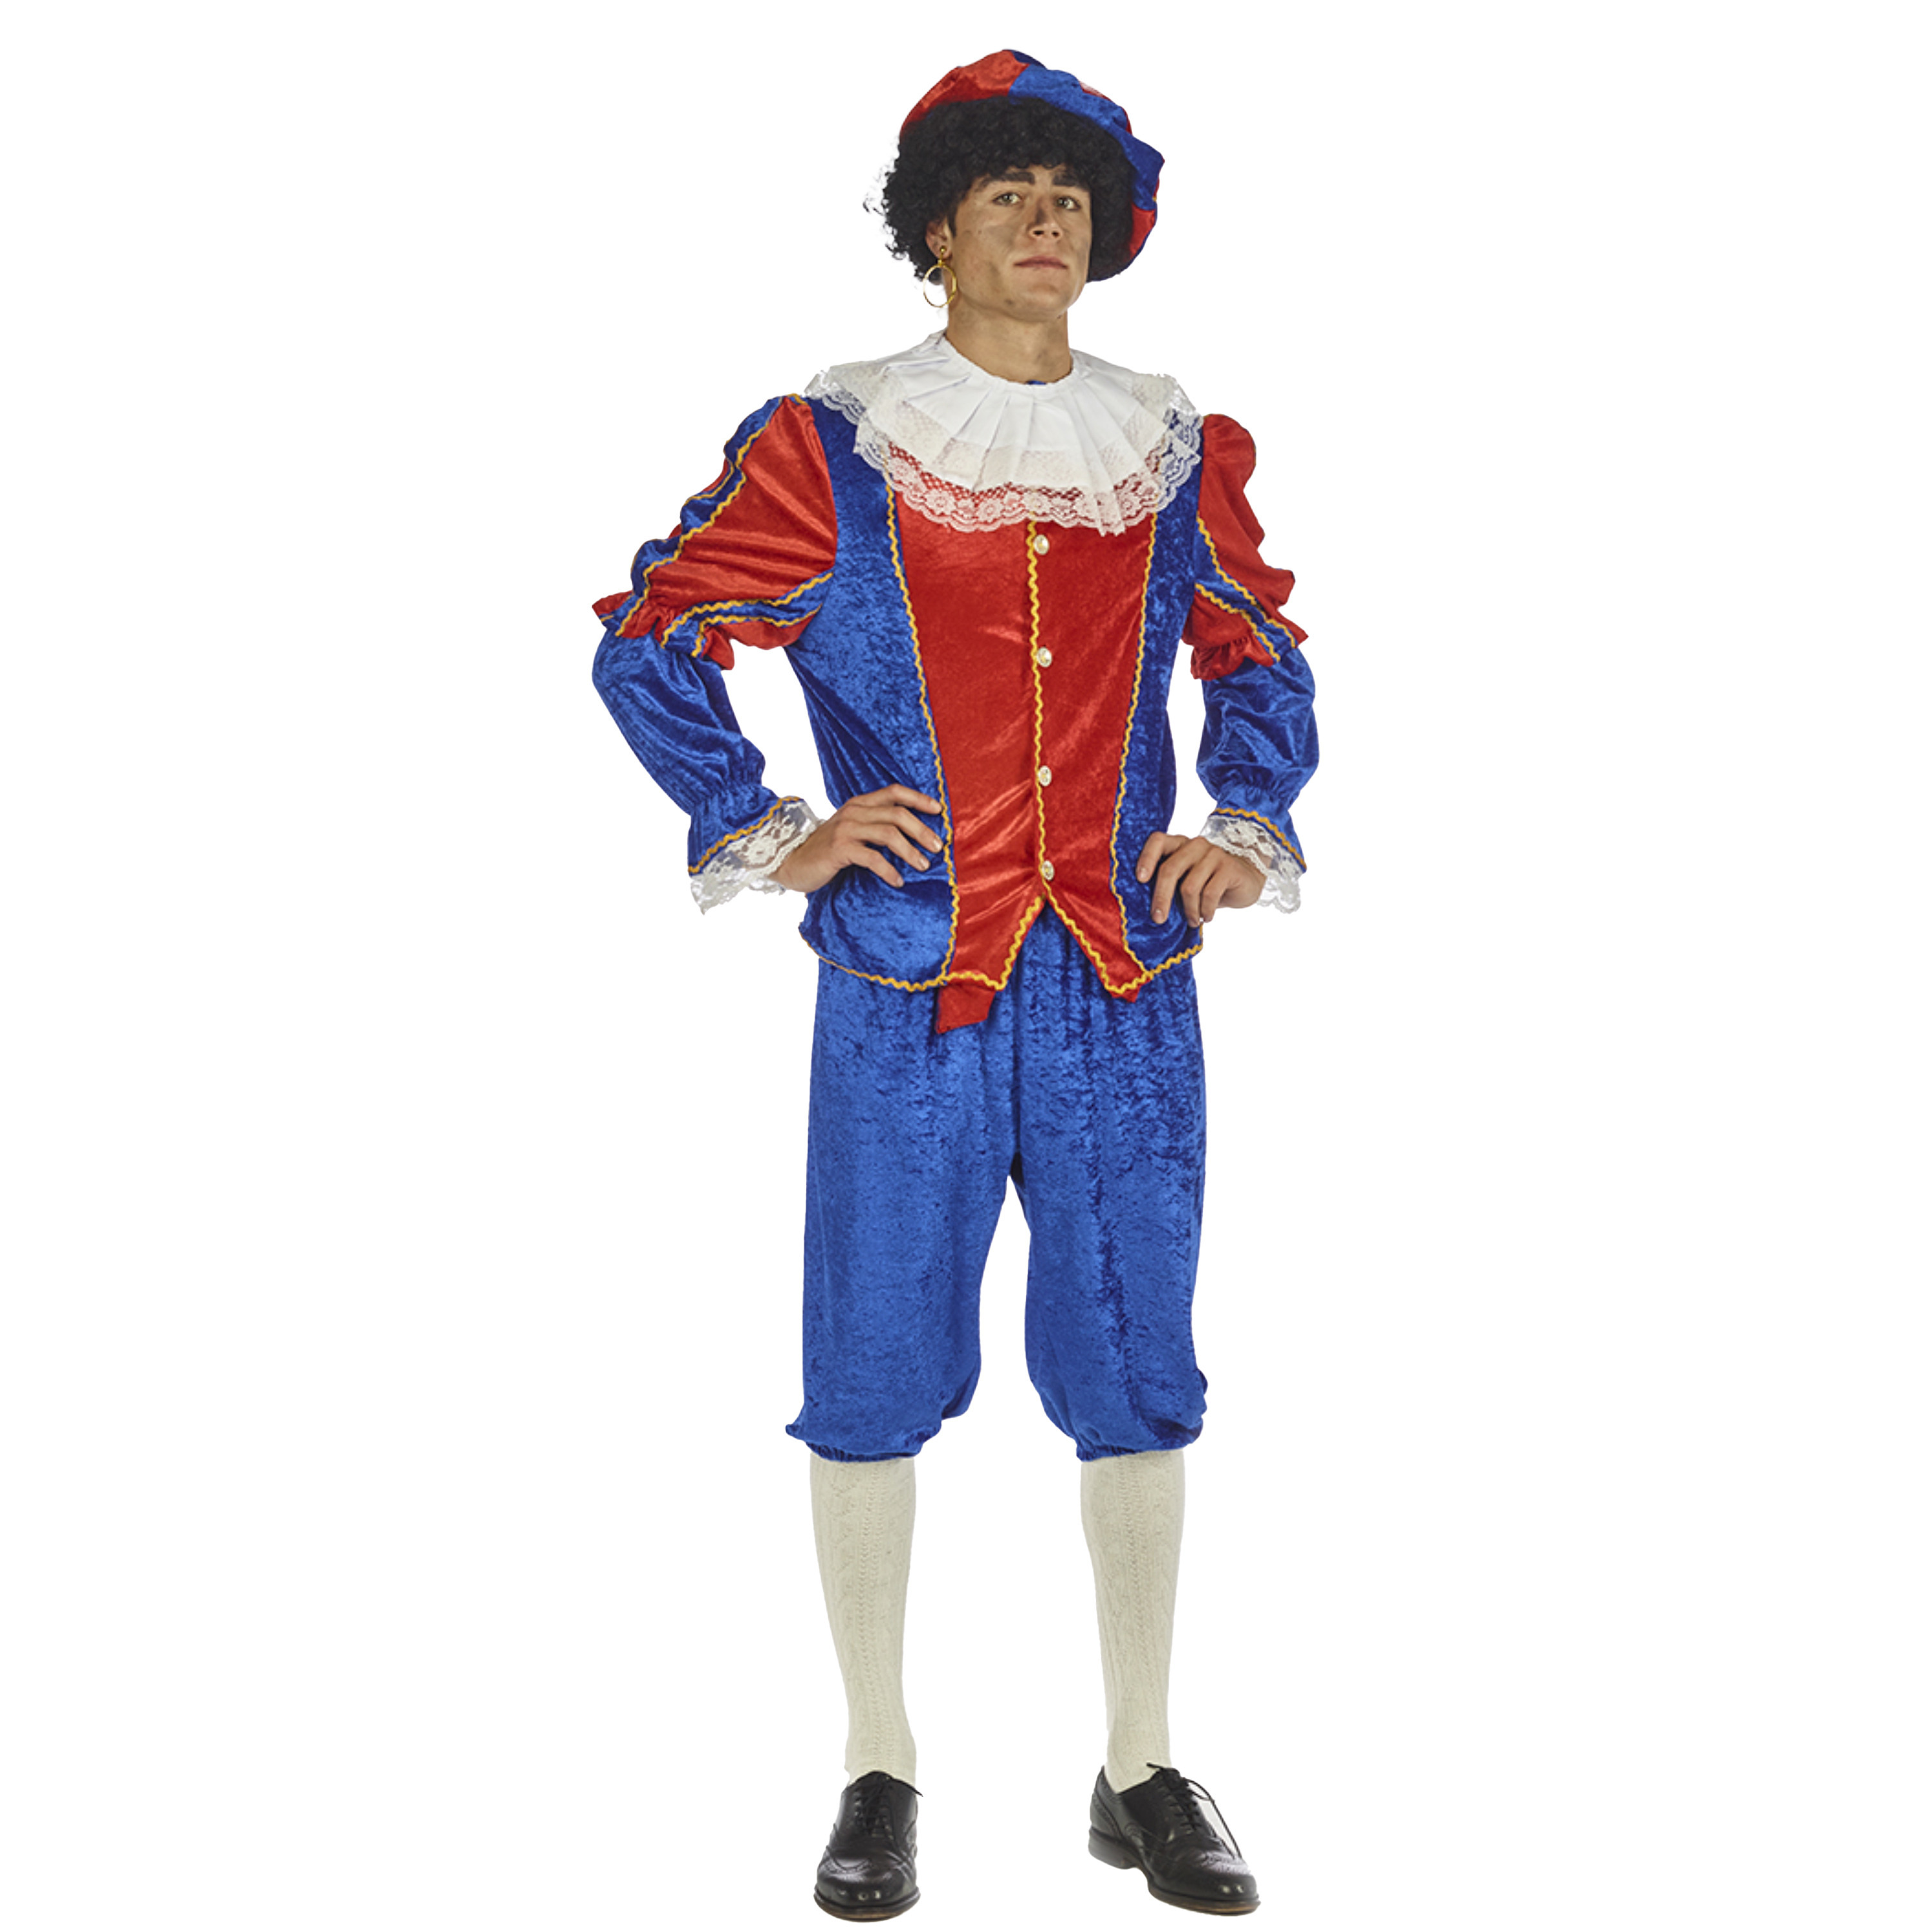 Piet verkleed kostuum 4-delig - blauw/rood - polyester - pietenpak voor volwassenen